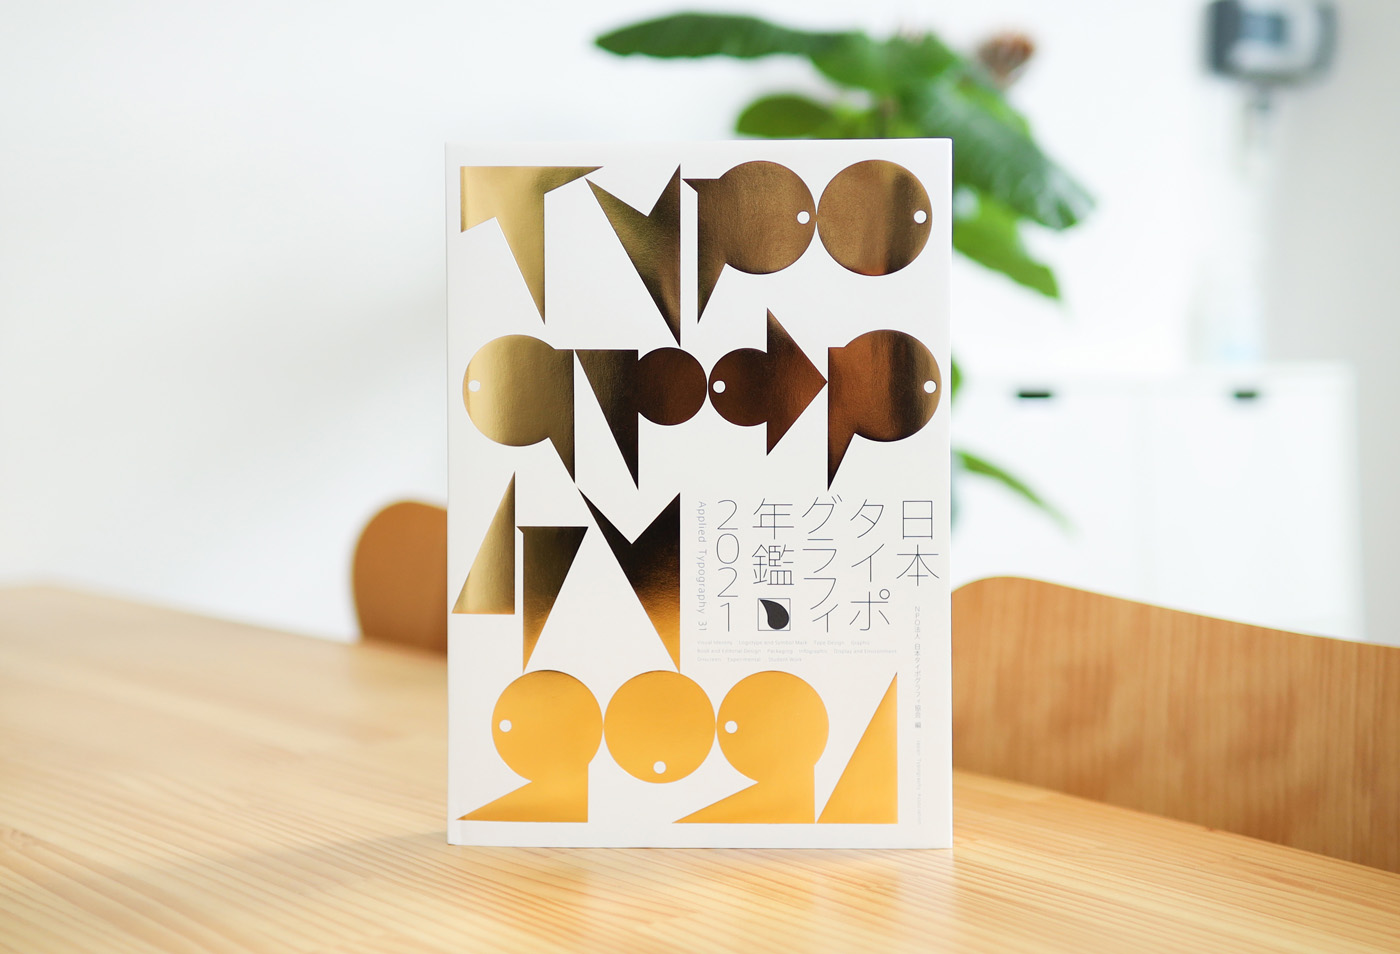 日本タイポグラフィ年鑑2021で入選しました | 香川県のデザイン制作事務所